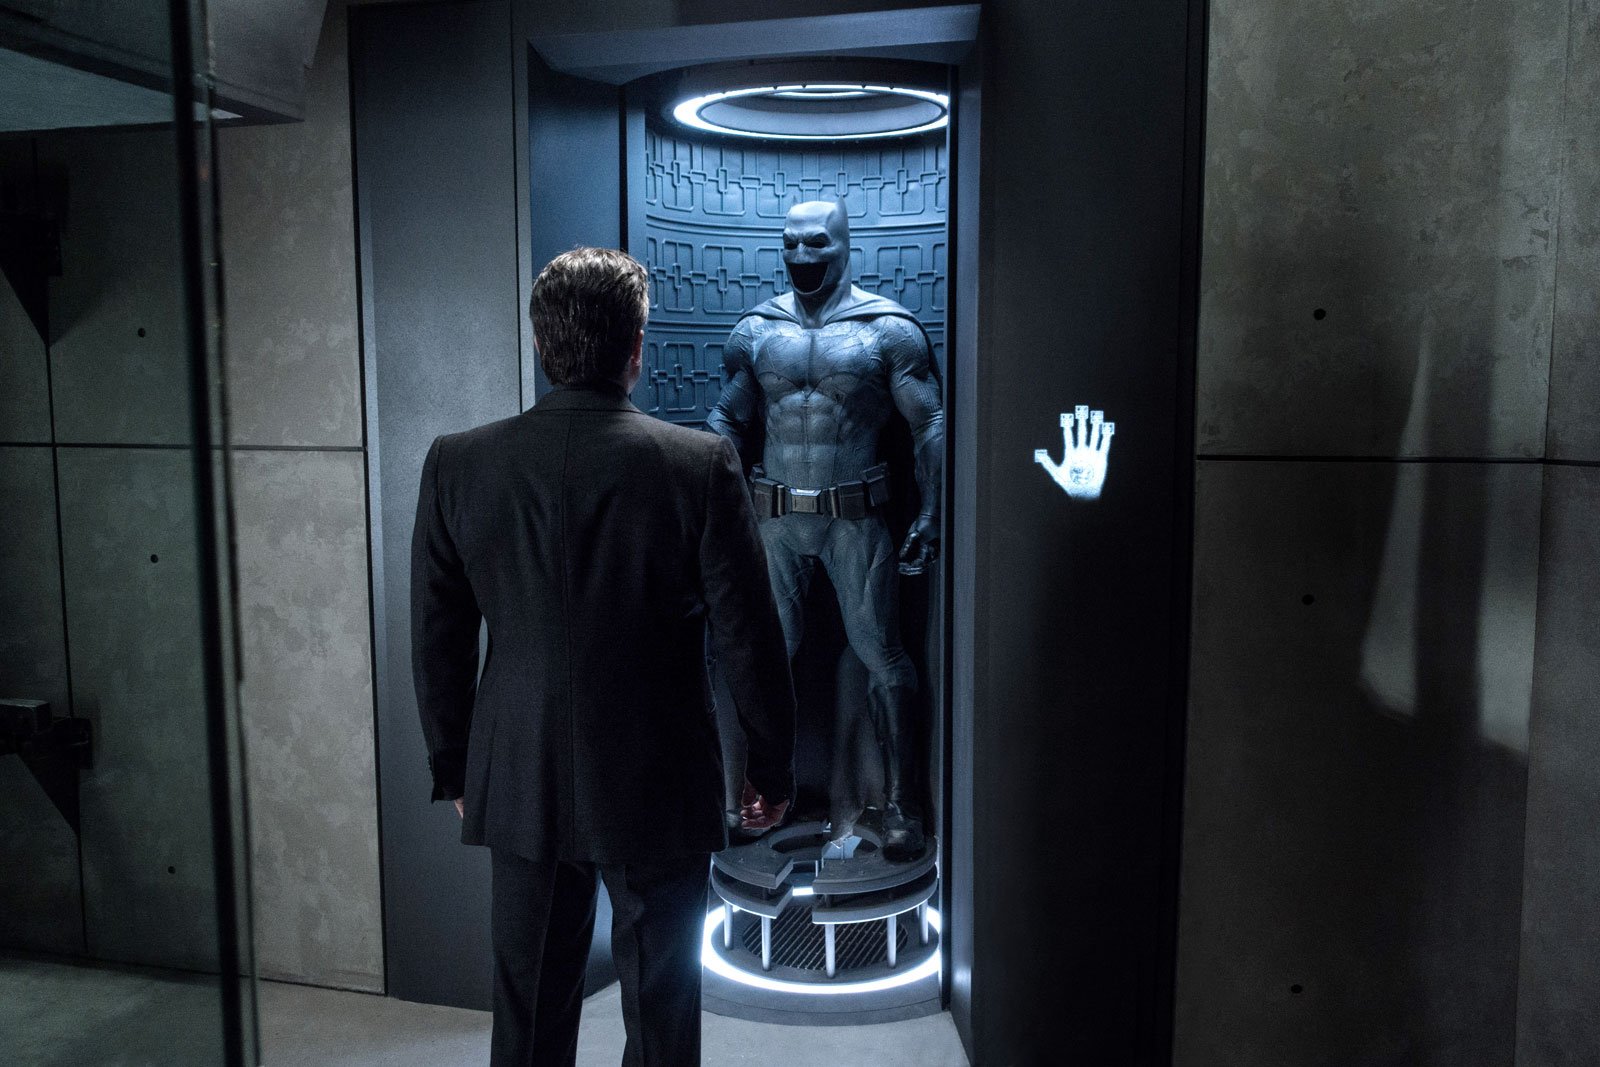 Elenco de Batman vs. Super-Homem reage às críticas negativas